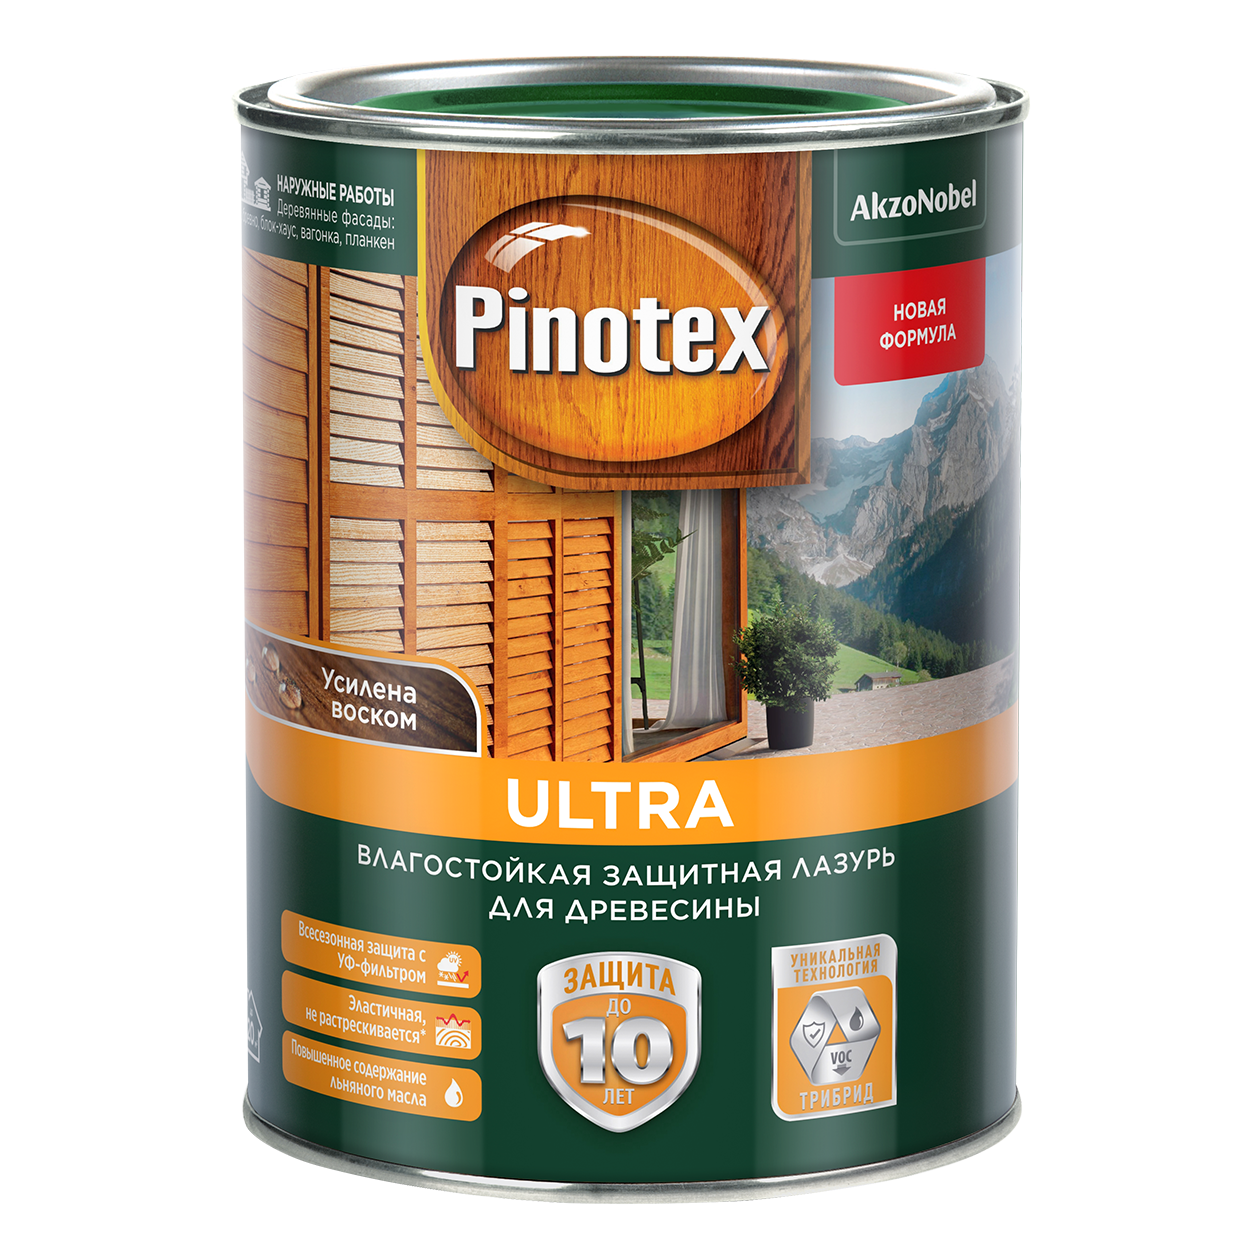 Pinotex Ultra. Влагостойкая защитная лазурь для древесины